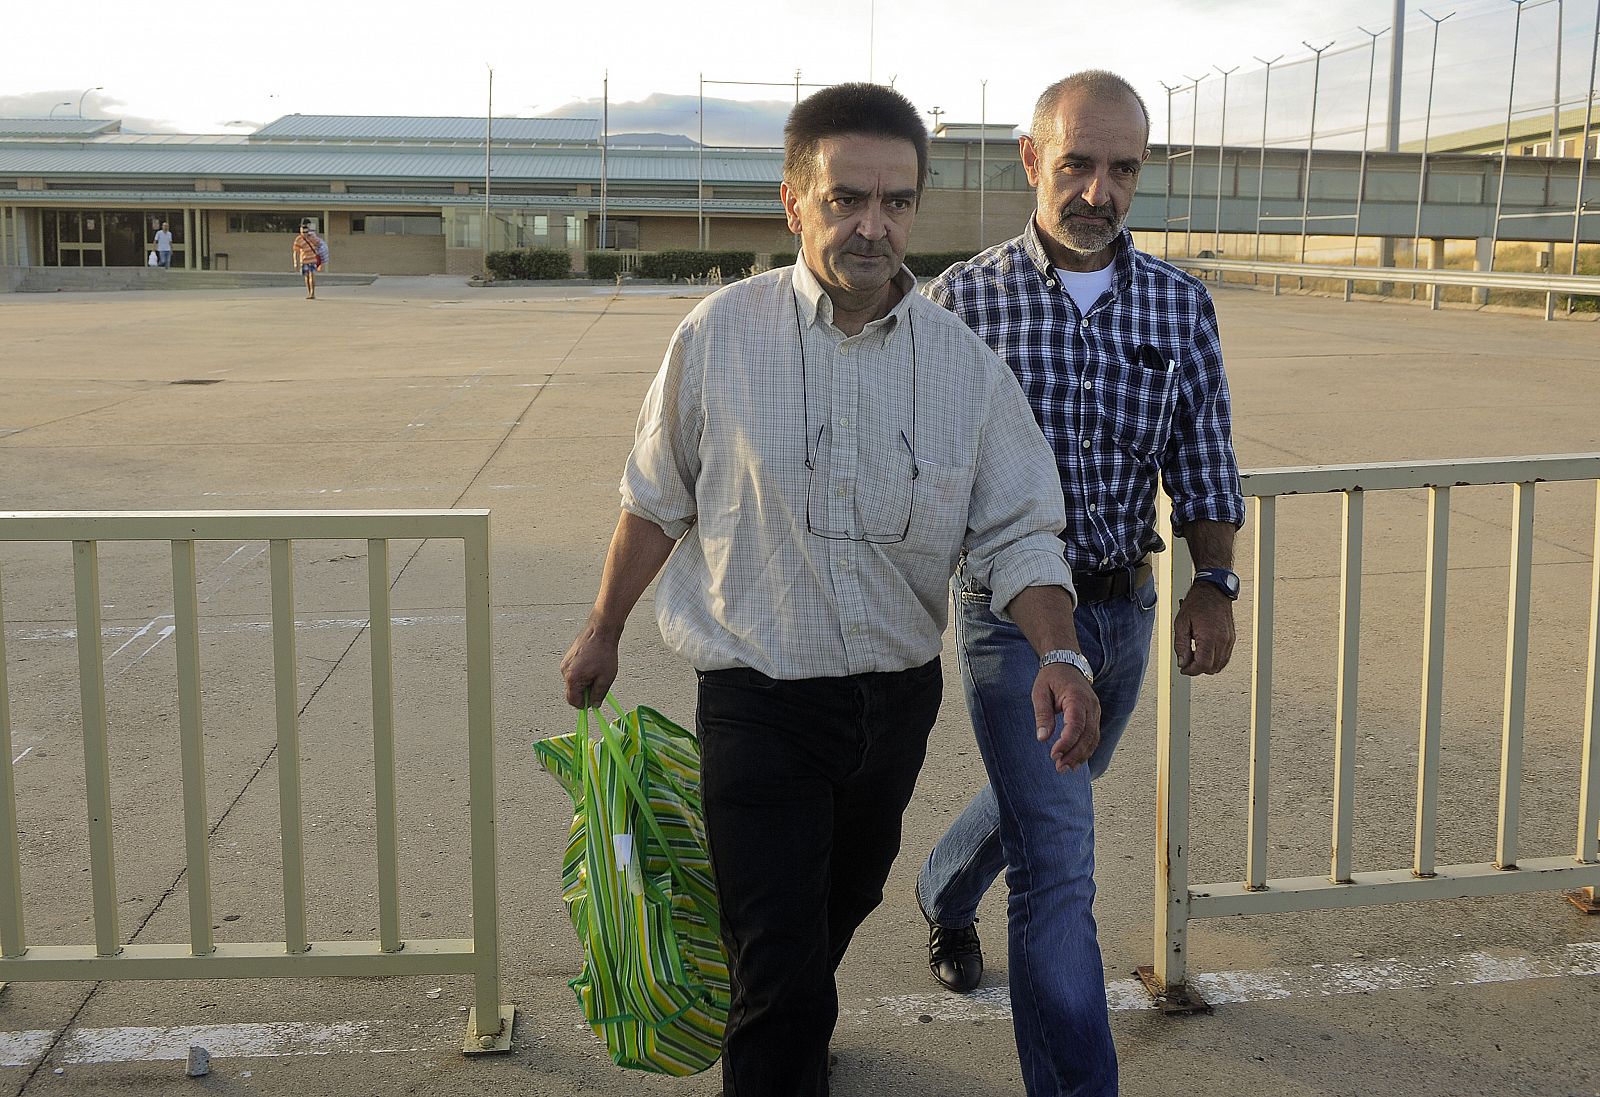 El exjefe etarra Iñaki de Rentería sale de la cárcel de Soto del Real acompañado de un familiar